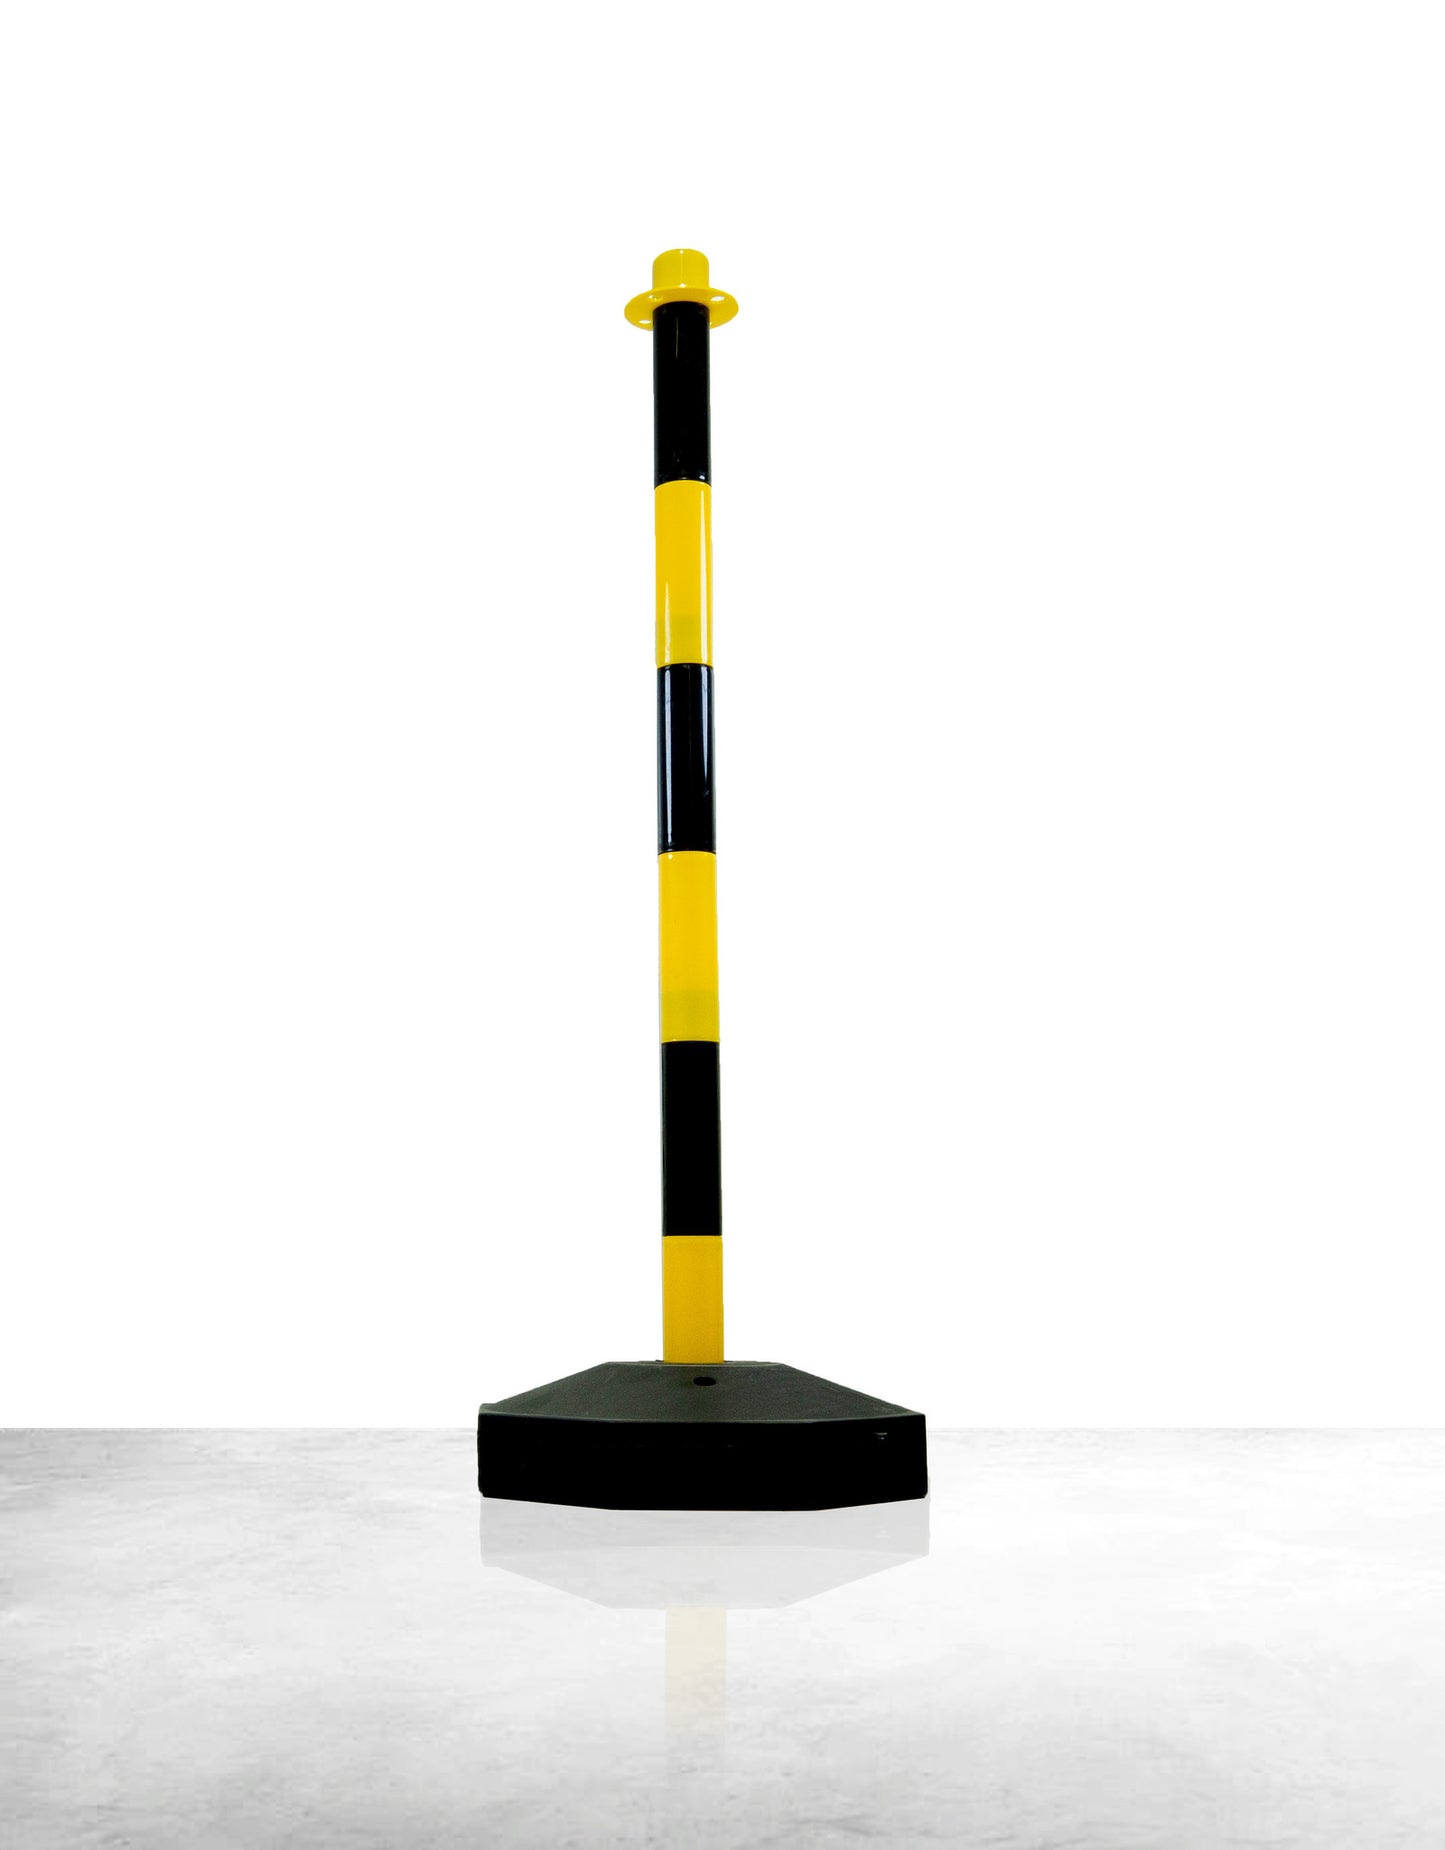 Poteau de balisage plastique, jaune / noir, une base vide à lester